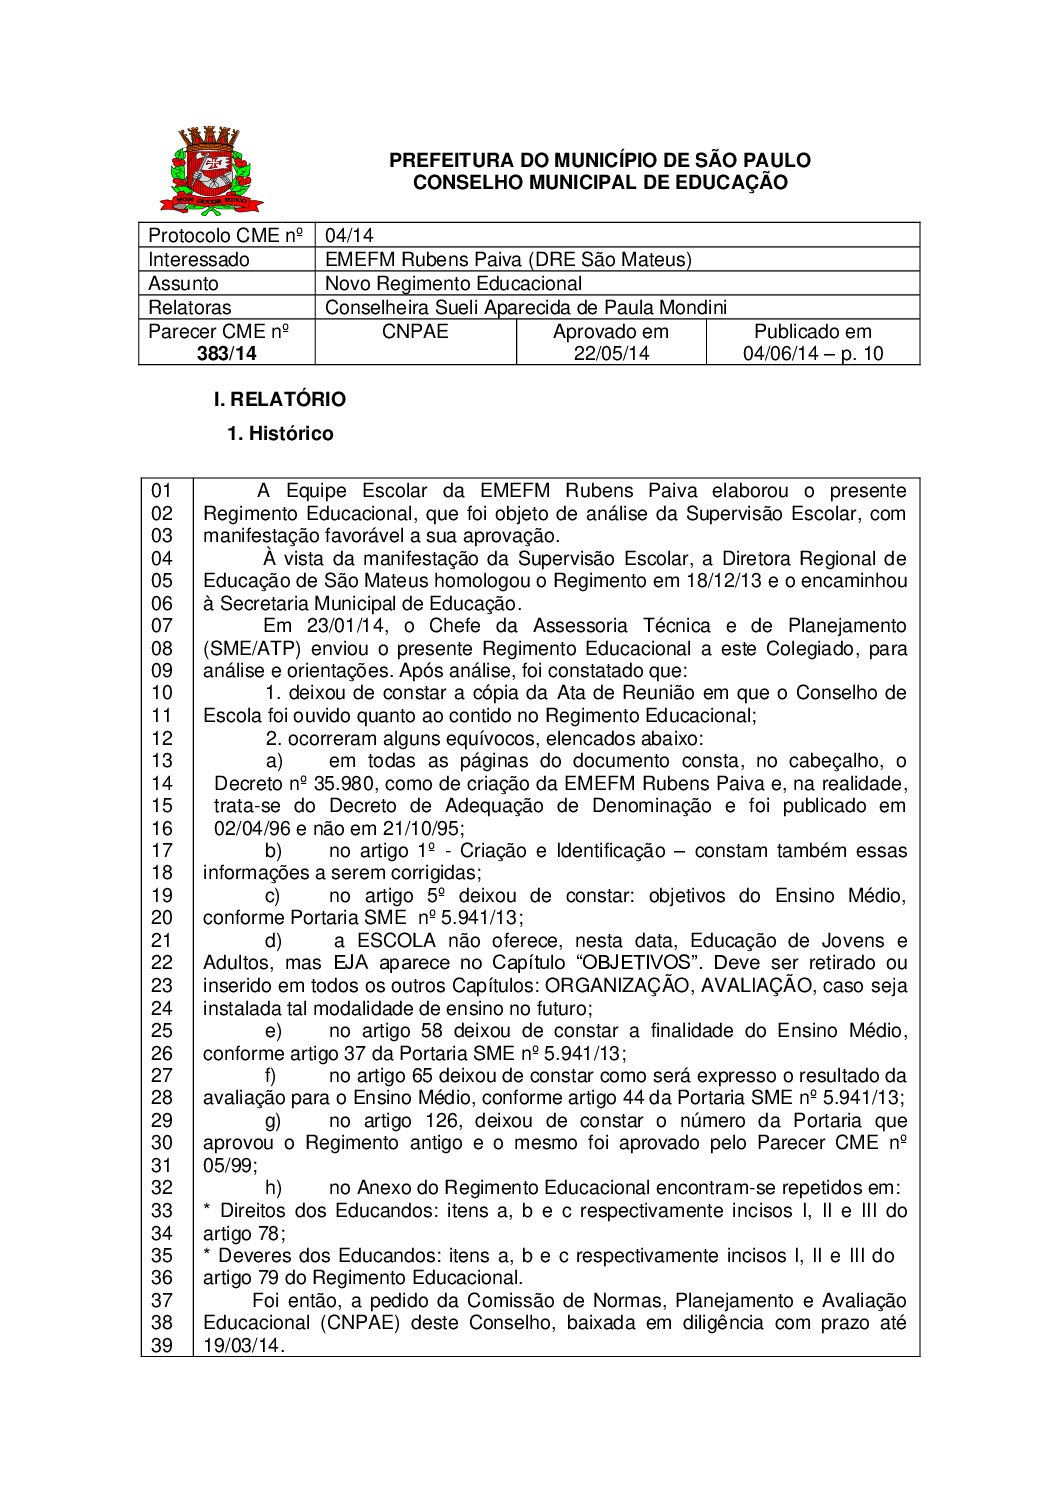 Parecer CME nº 383/2014 - EMEFM Rubens Paiva (DRE São Mateus) - Novo Regimento Educacional